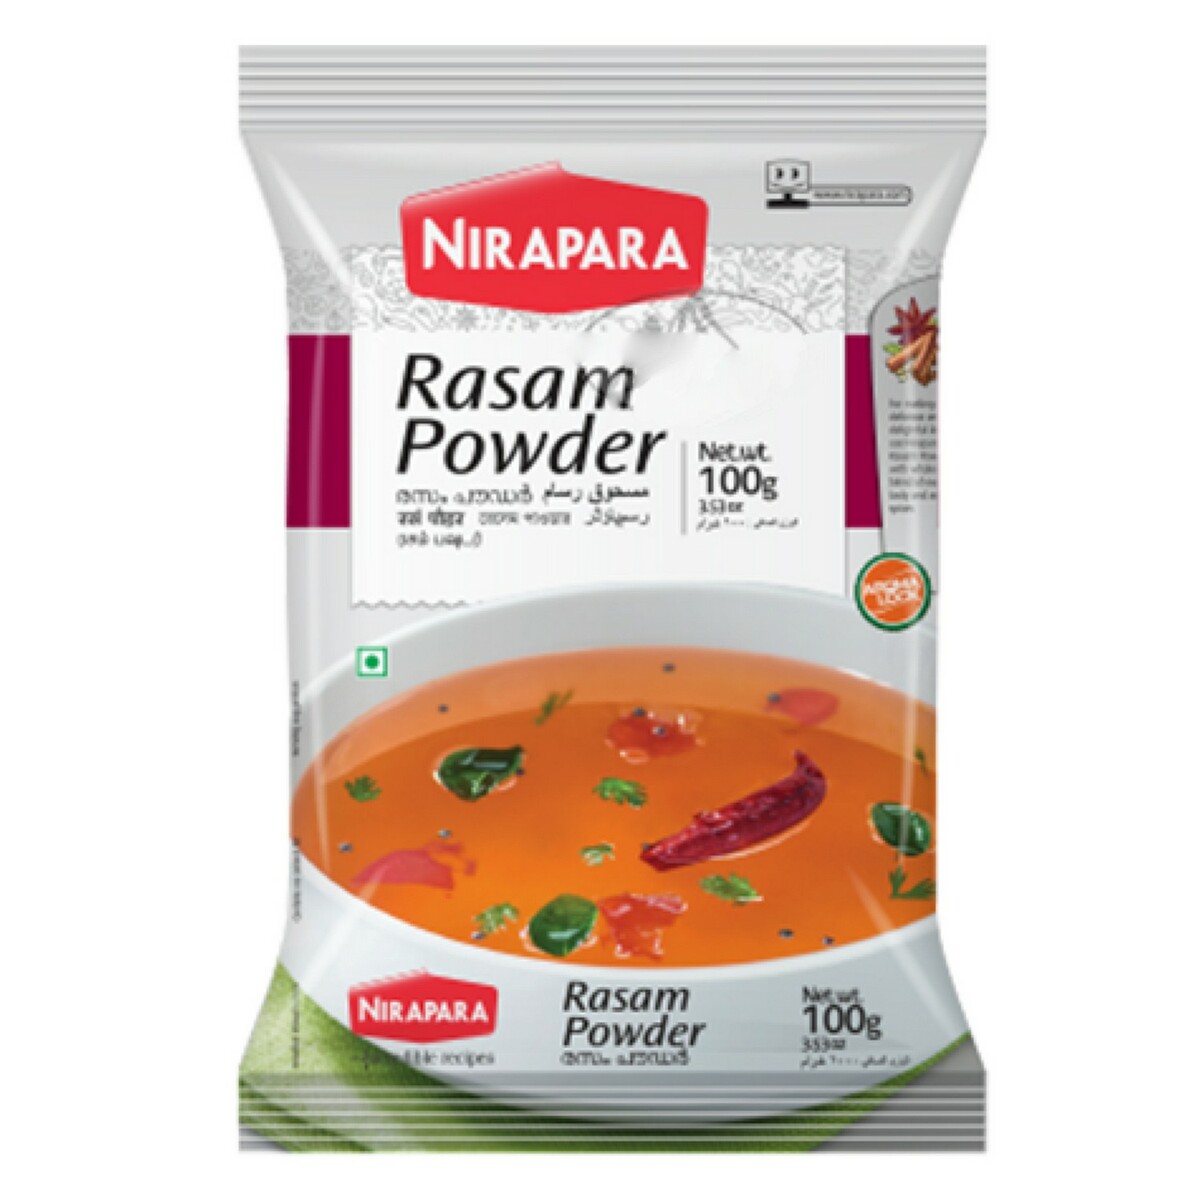 Nirapara Rasam Powder 100g